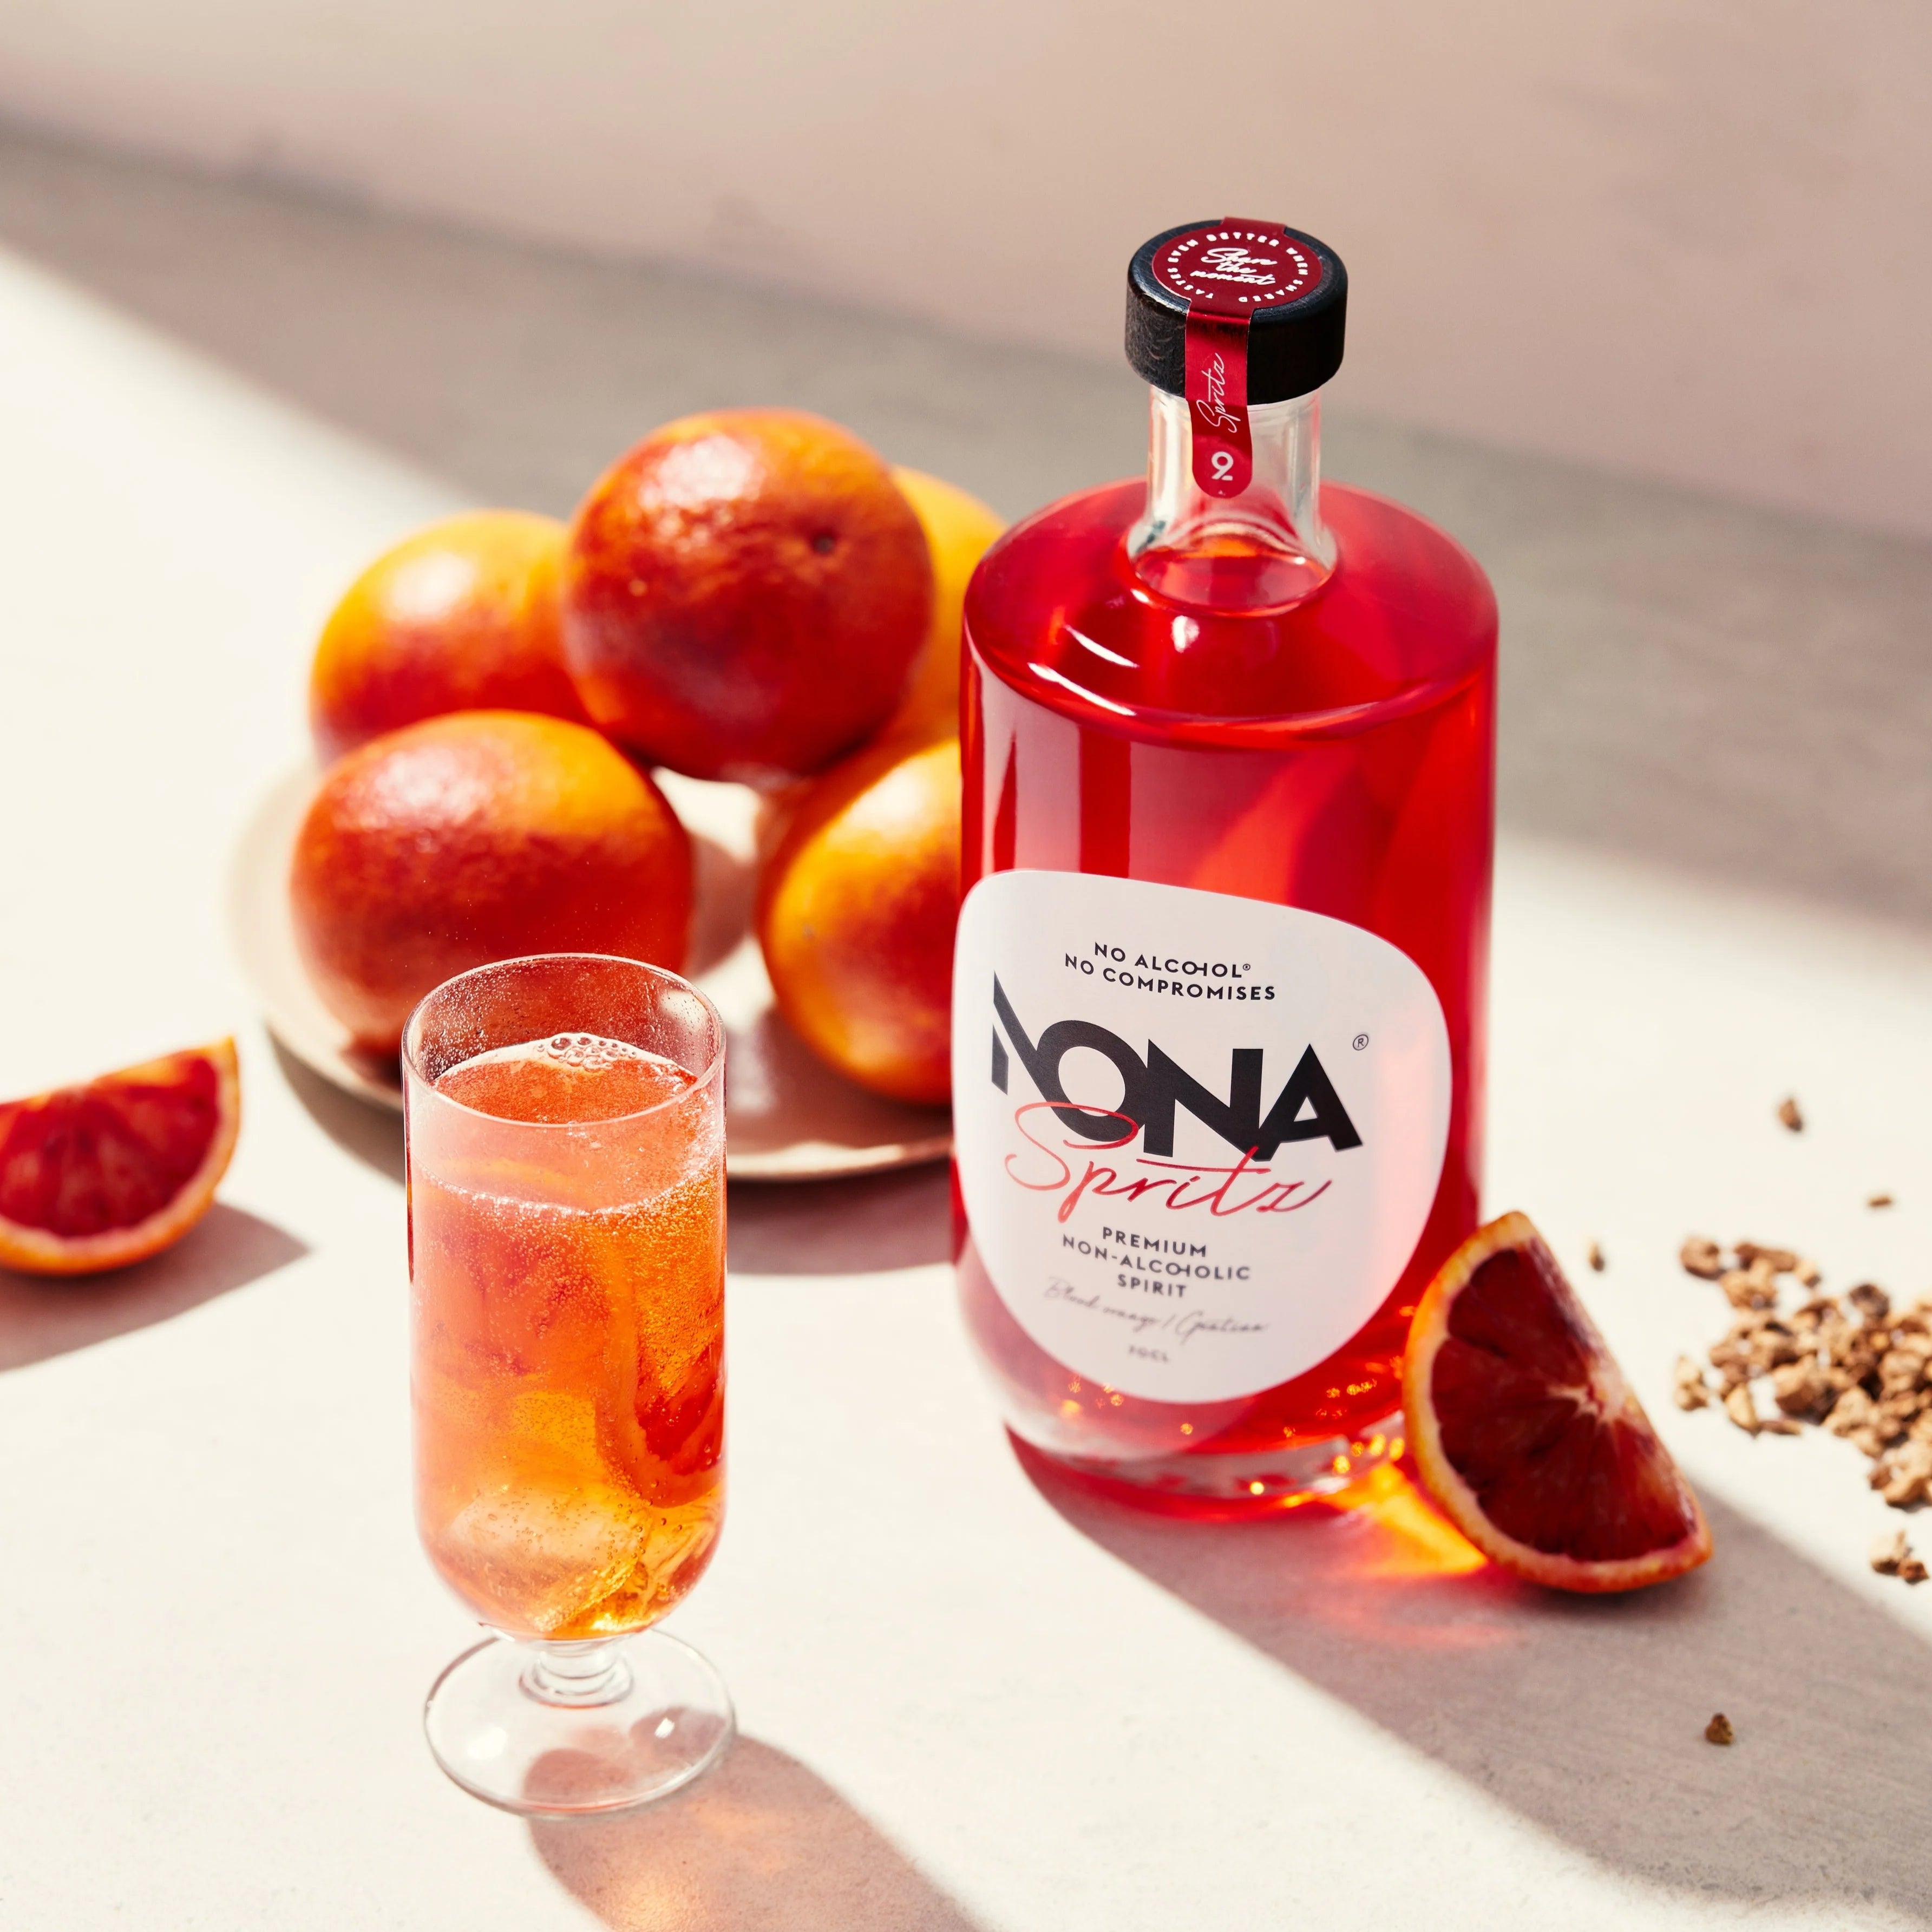 Sfeerfoto van een fles NONA Spritz 70cl. Links staat een cocktailglas gevuld met een drankje gemaakt van de Nona Spritz. Links ligt een stapel grapefruits en rechts een doorgesneden partje grapefruit. 